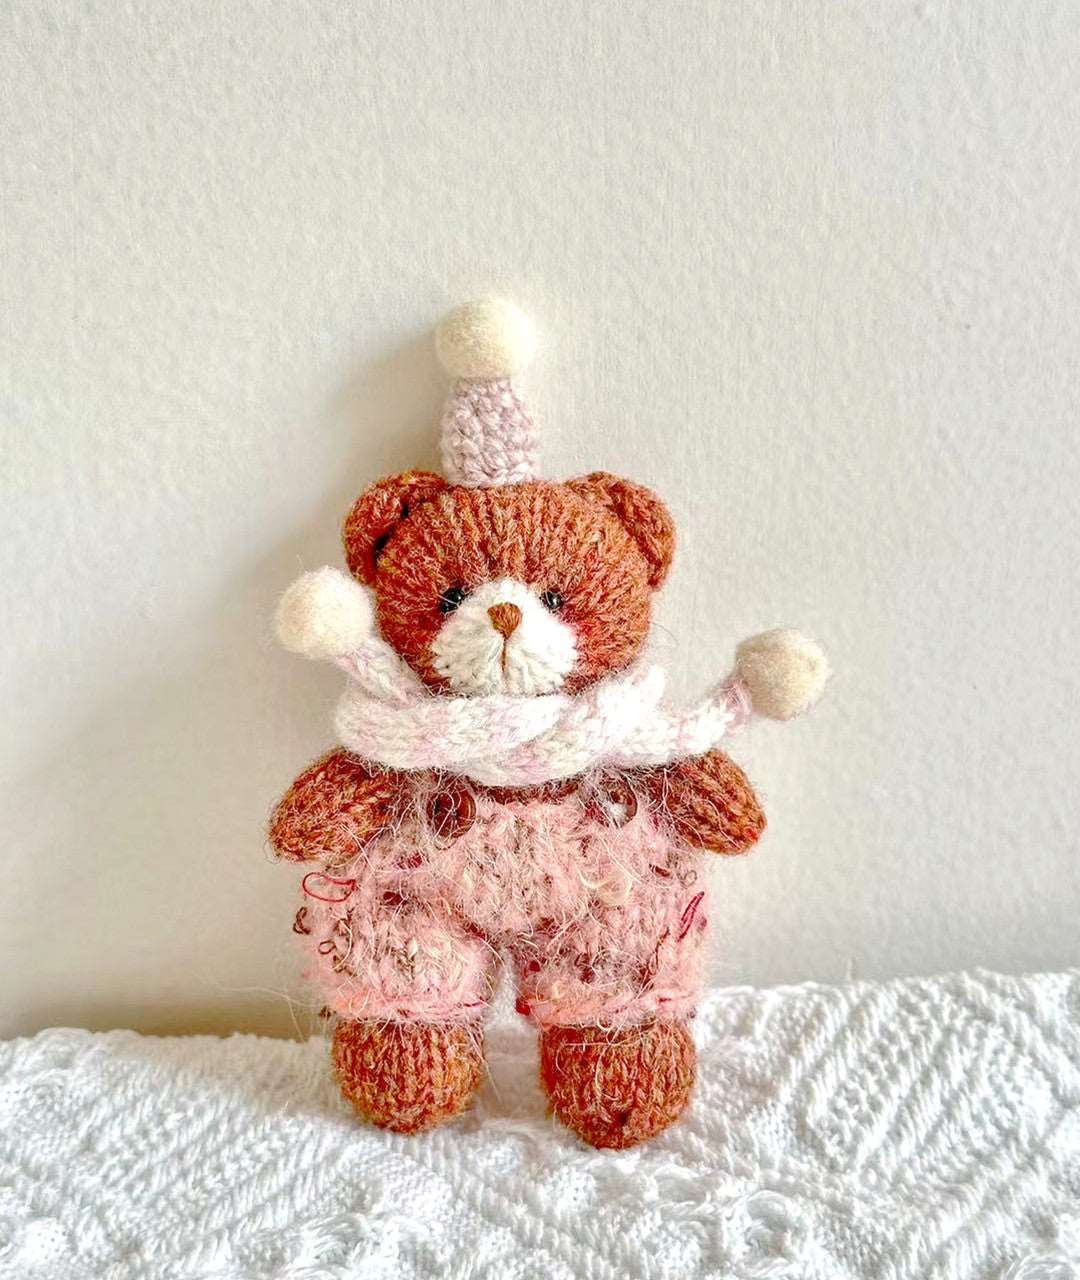 Exquisite Crocheted Teddy Bear Figurine for Indoor Display